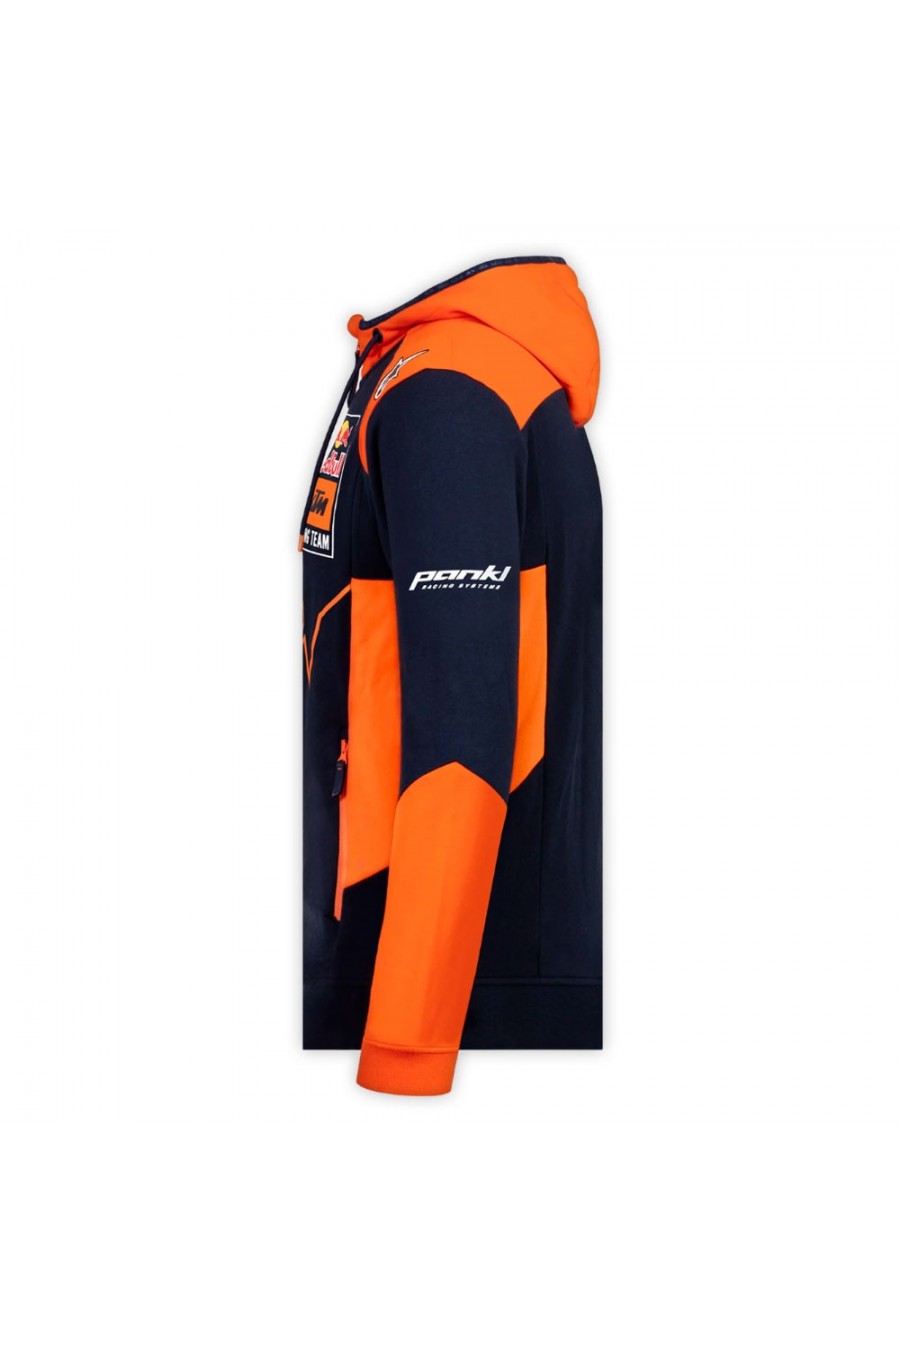 Red Bull KTM Racing-hoodie